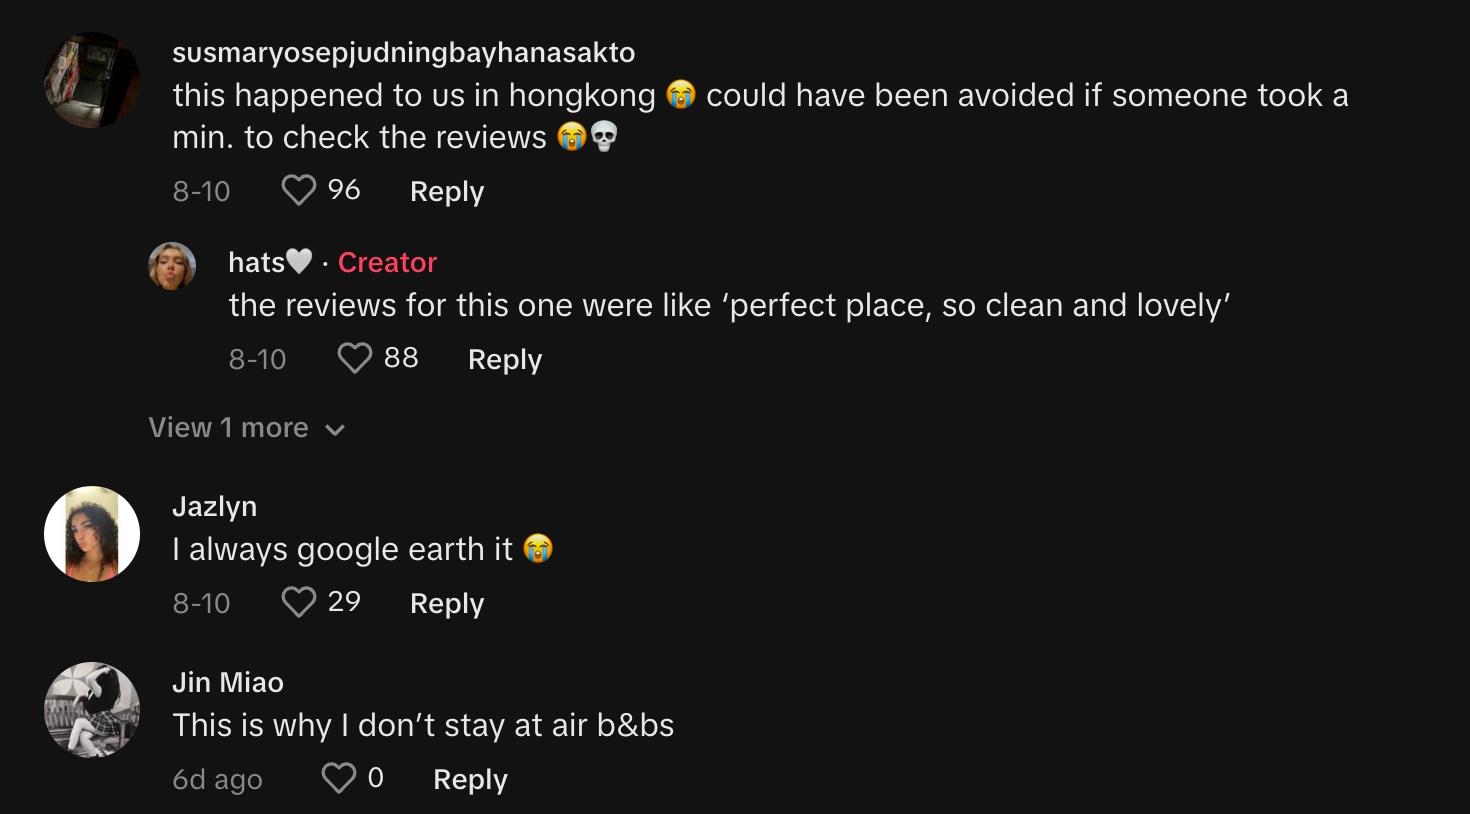 Os comentaristas compartilham experiências semelhantes com Airbnbs